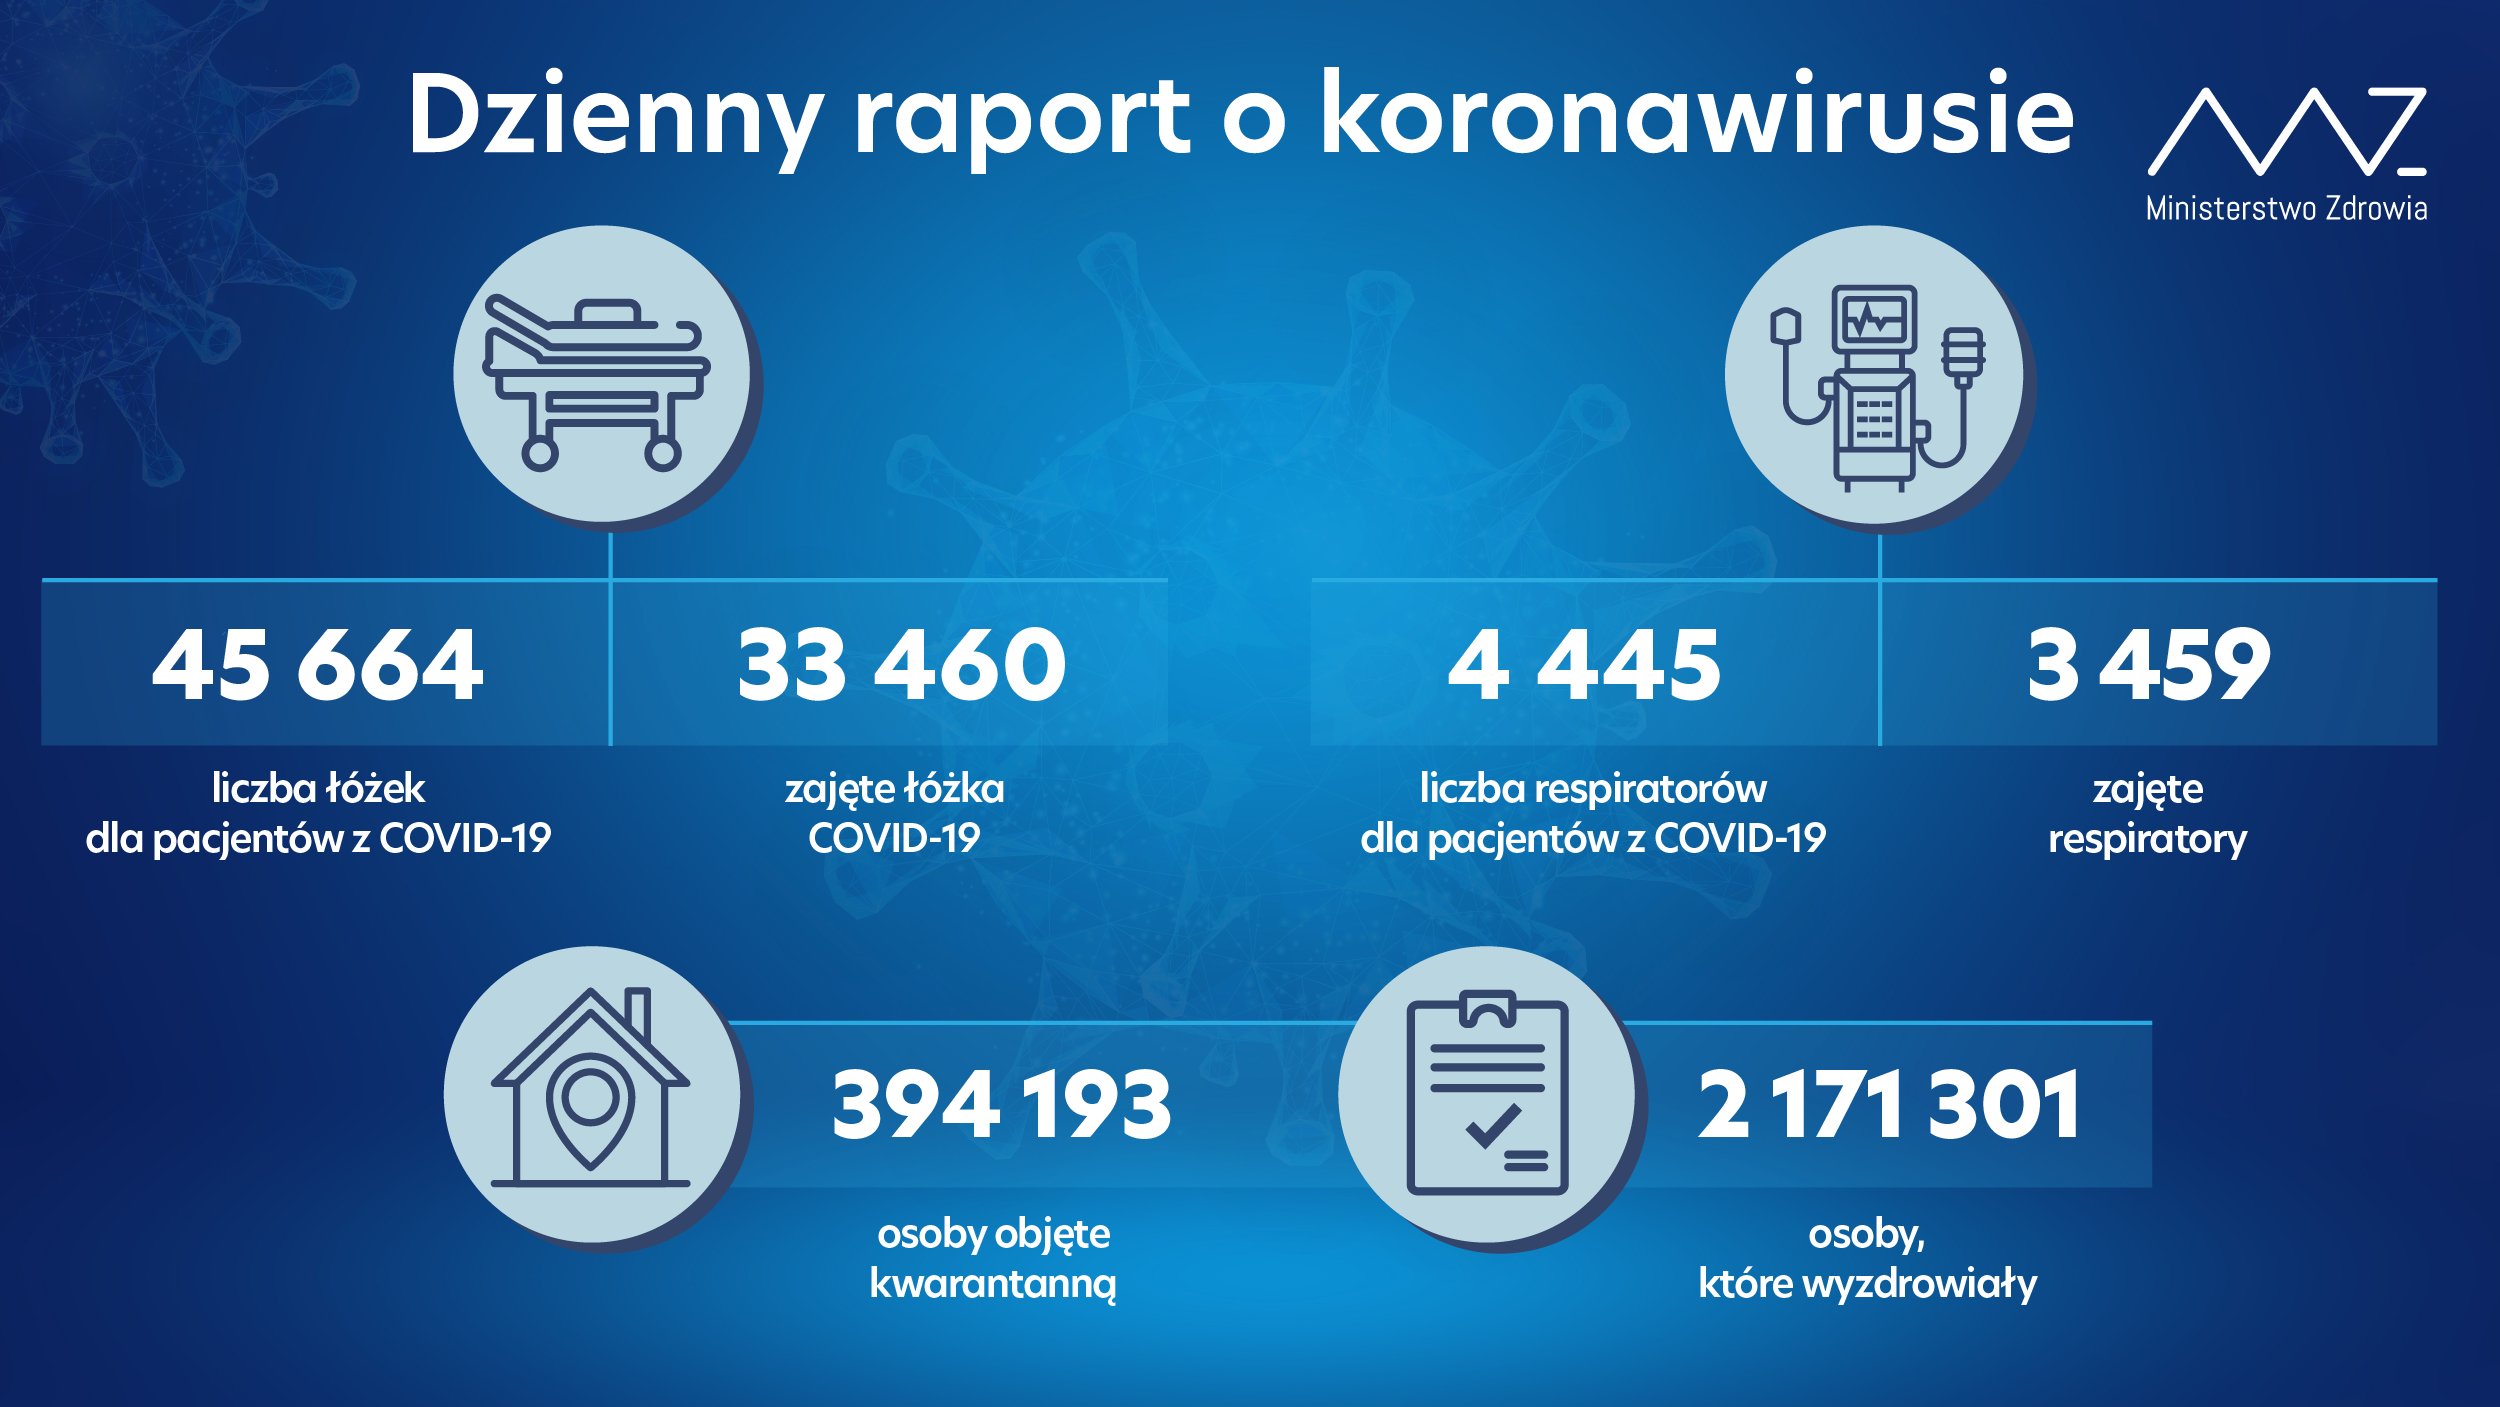 21 703 nowe zakażenia koronawirusem, nie żyje 245 osób z infekcją COVID-19